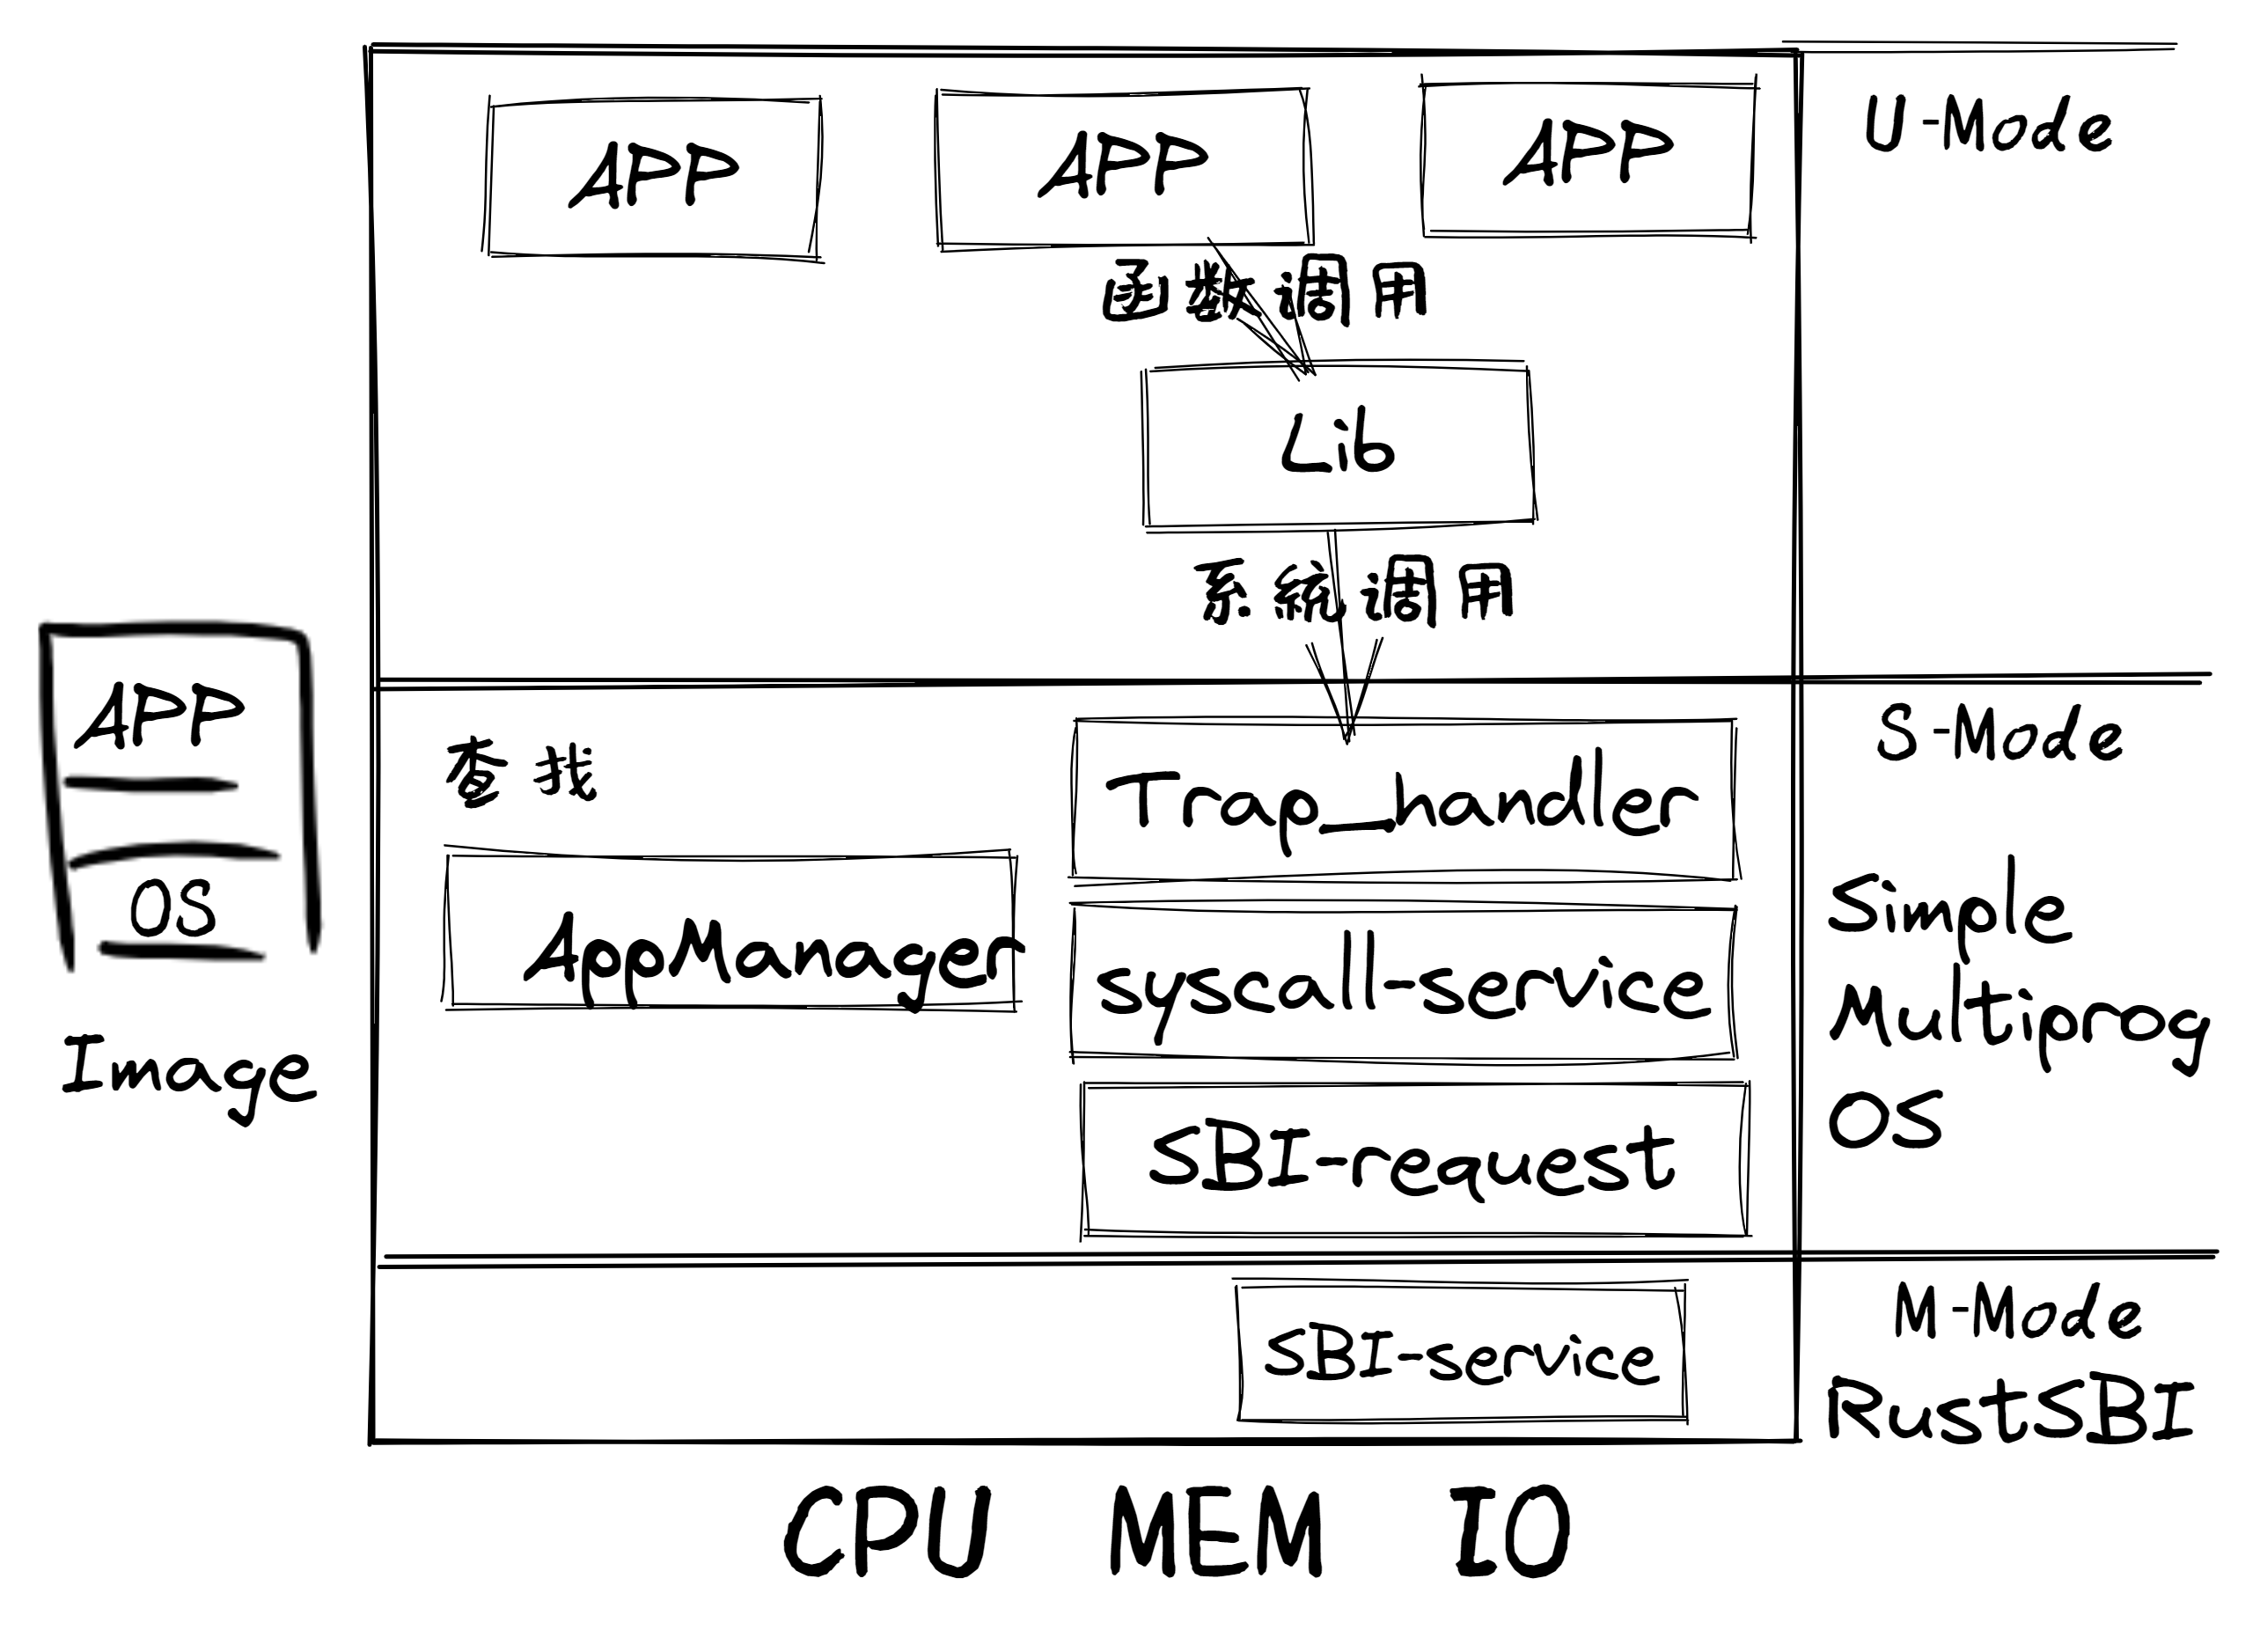 锯齿螈多道程序操作系统 -- Multiprog OS总体结构